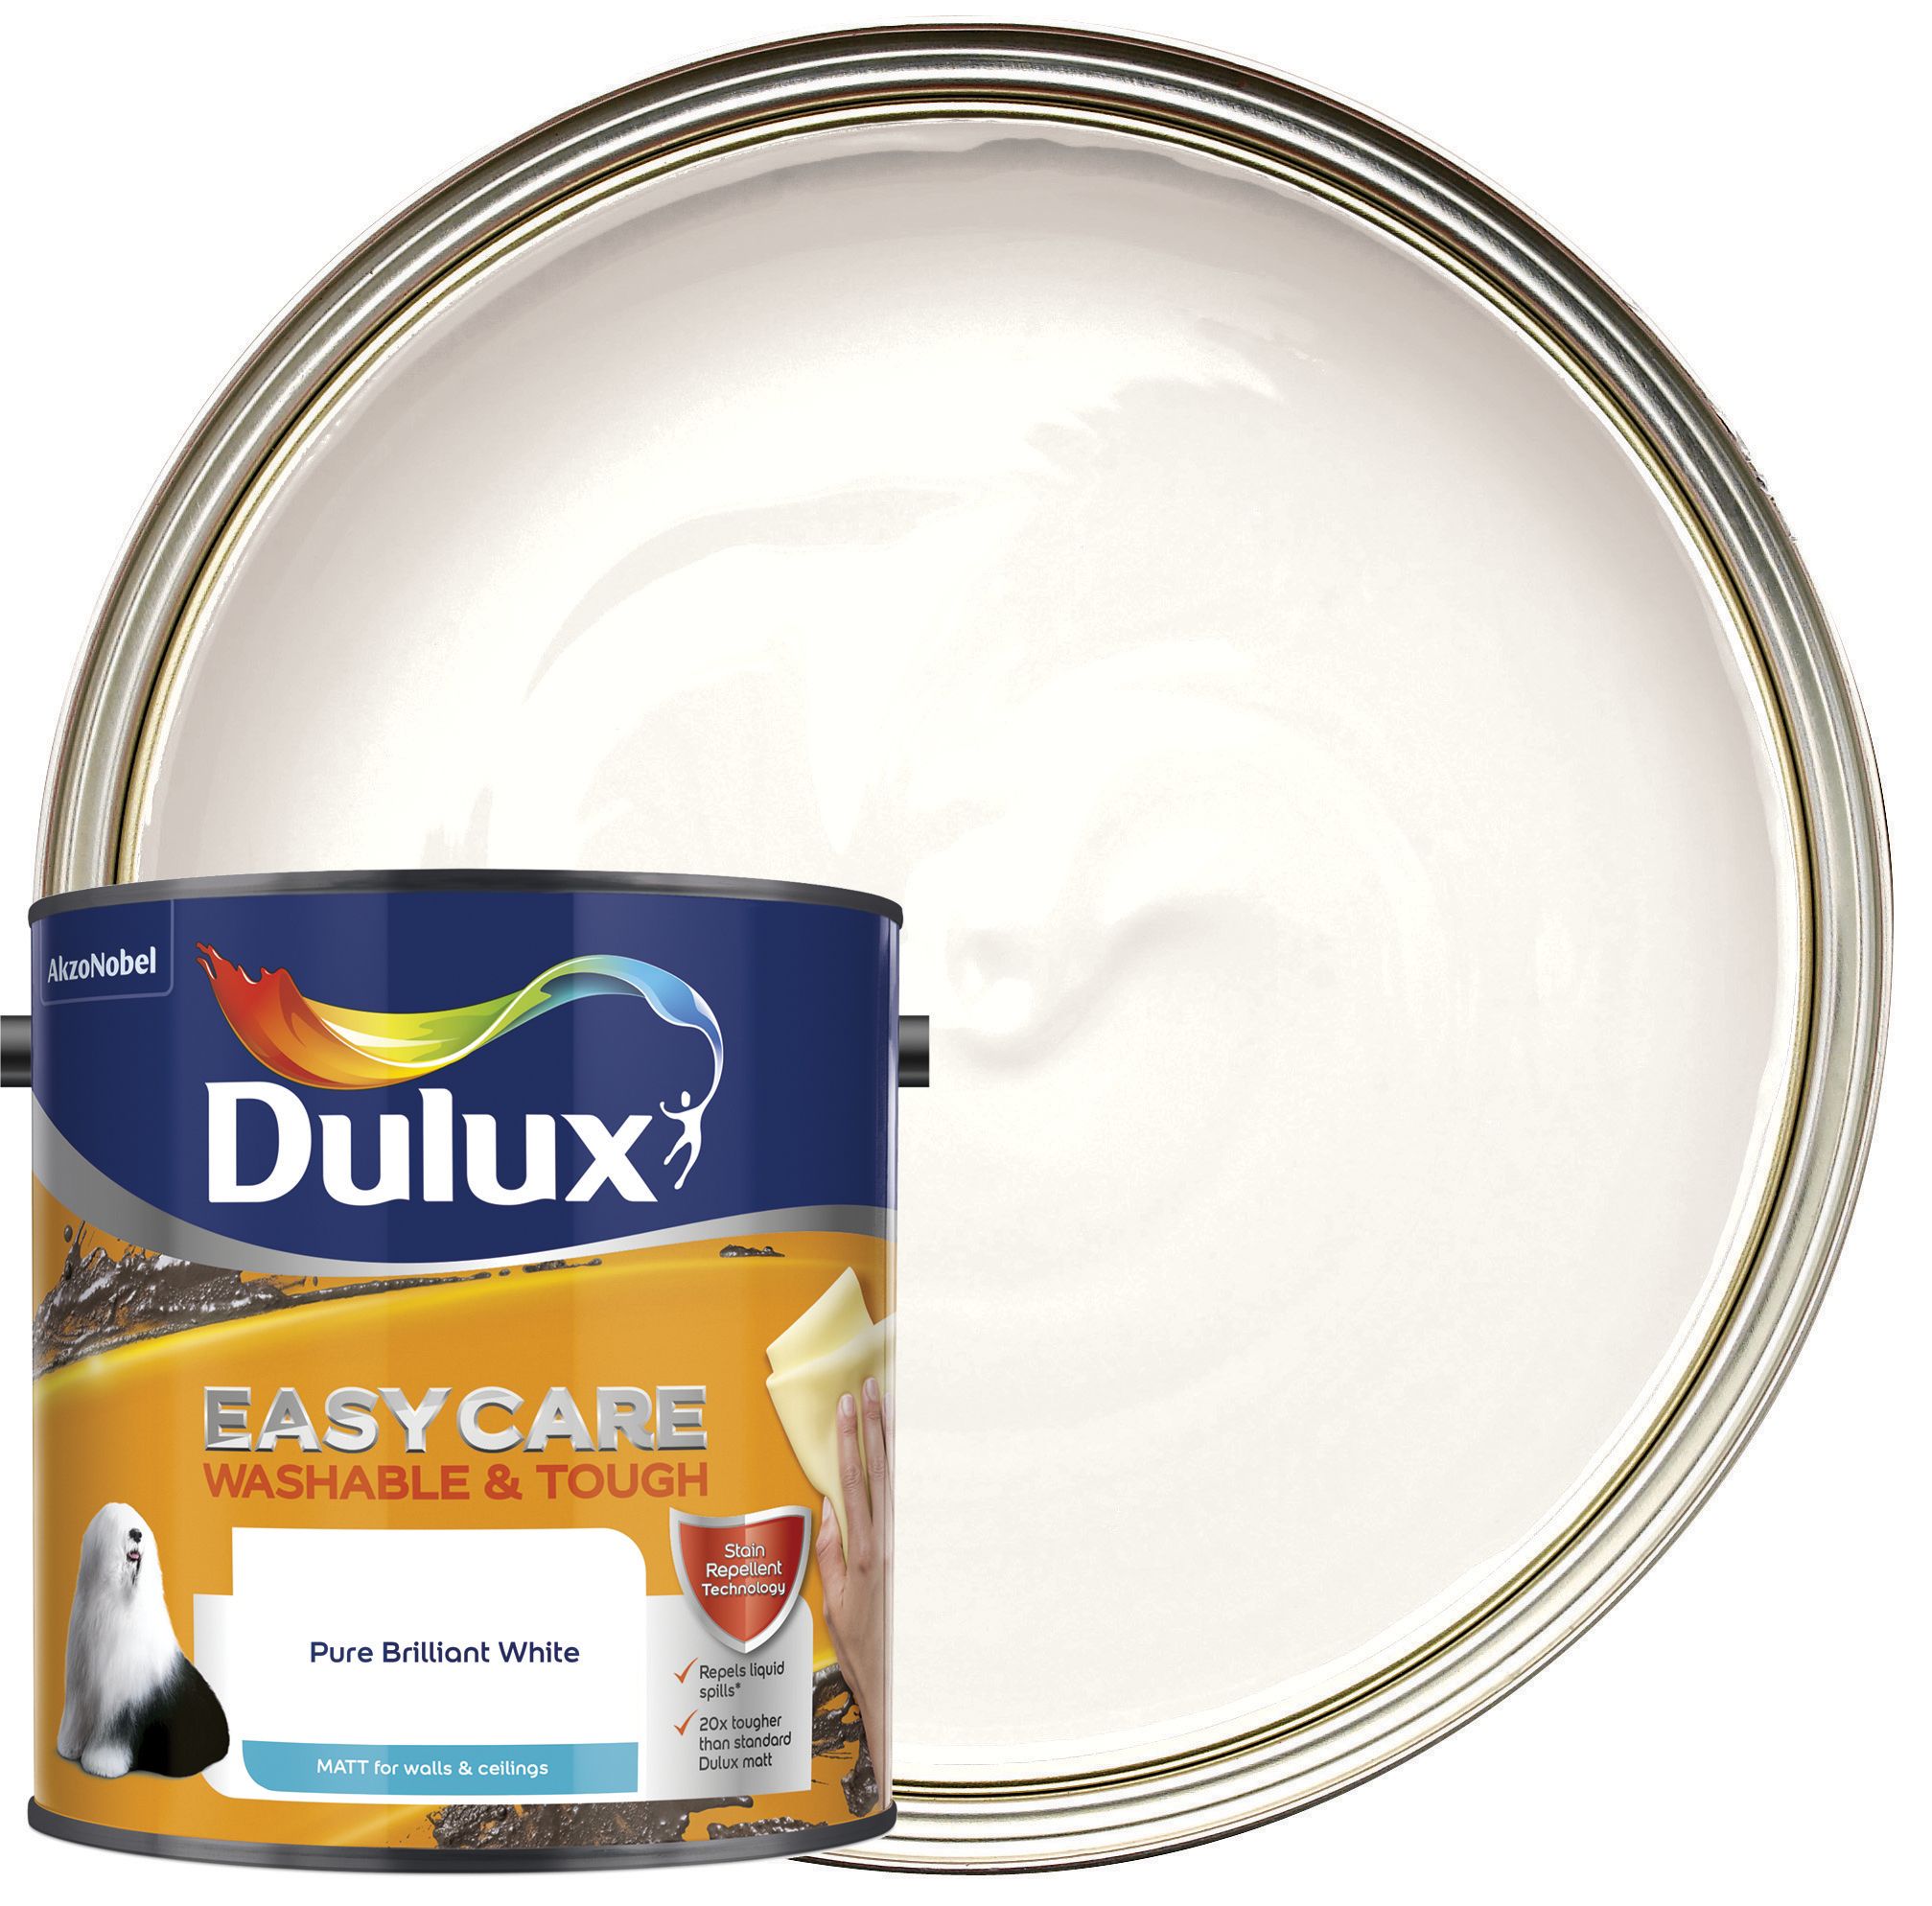 Dulux Easycare Washable & Tough Matt Emulsion Paint - Pure Brilliant White - 2.5L